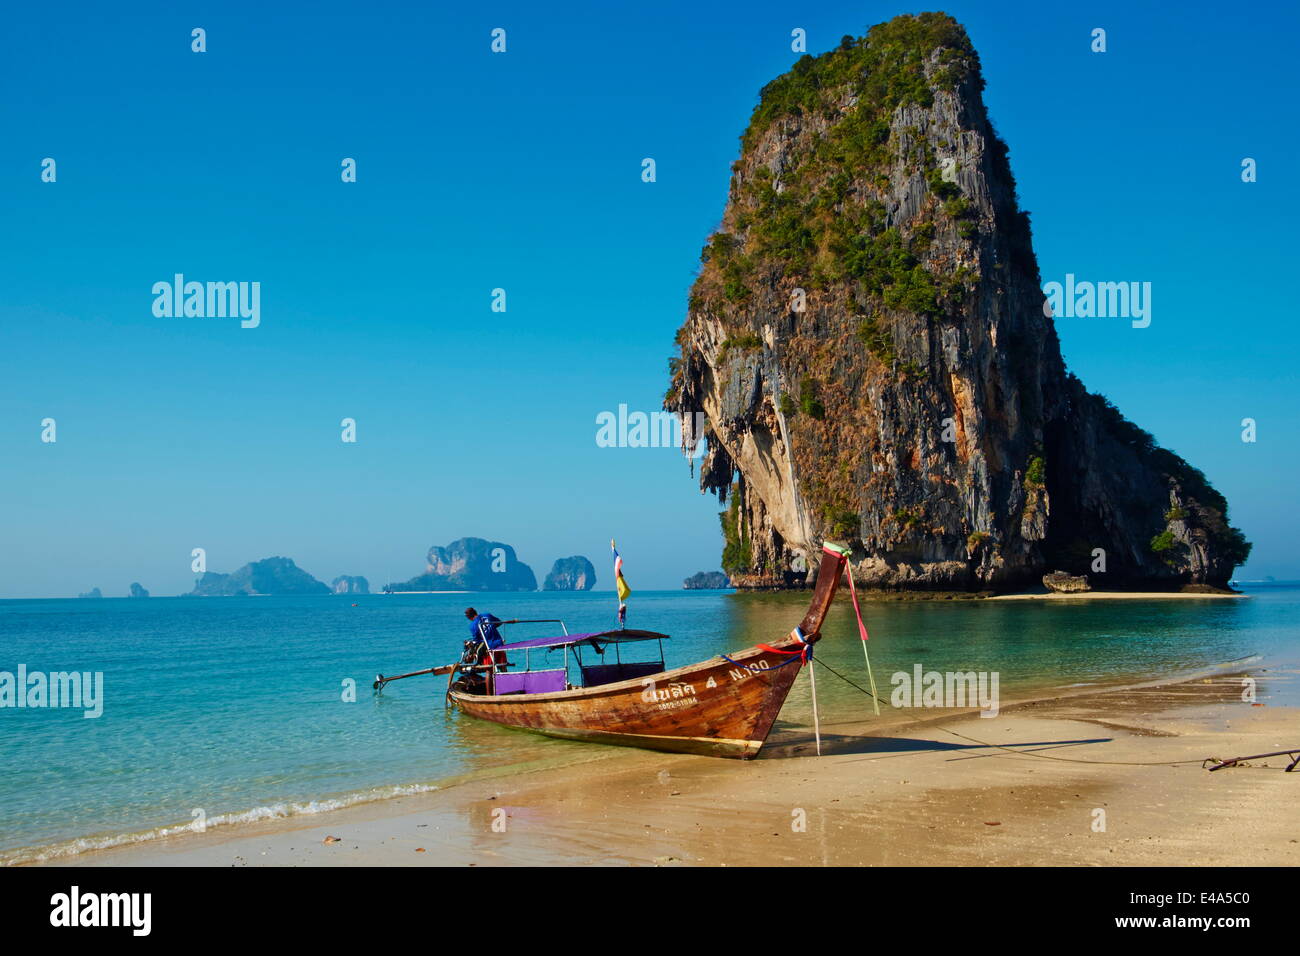 La baie de Ao Phra Nang Railay Beach, Hat Tham Phra Nang Beach, province de Krabi, Thaïlande, Asie du Sud, Asie Banque D'Images